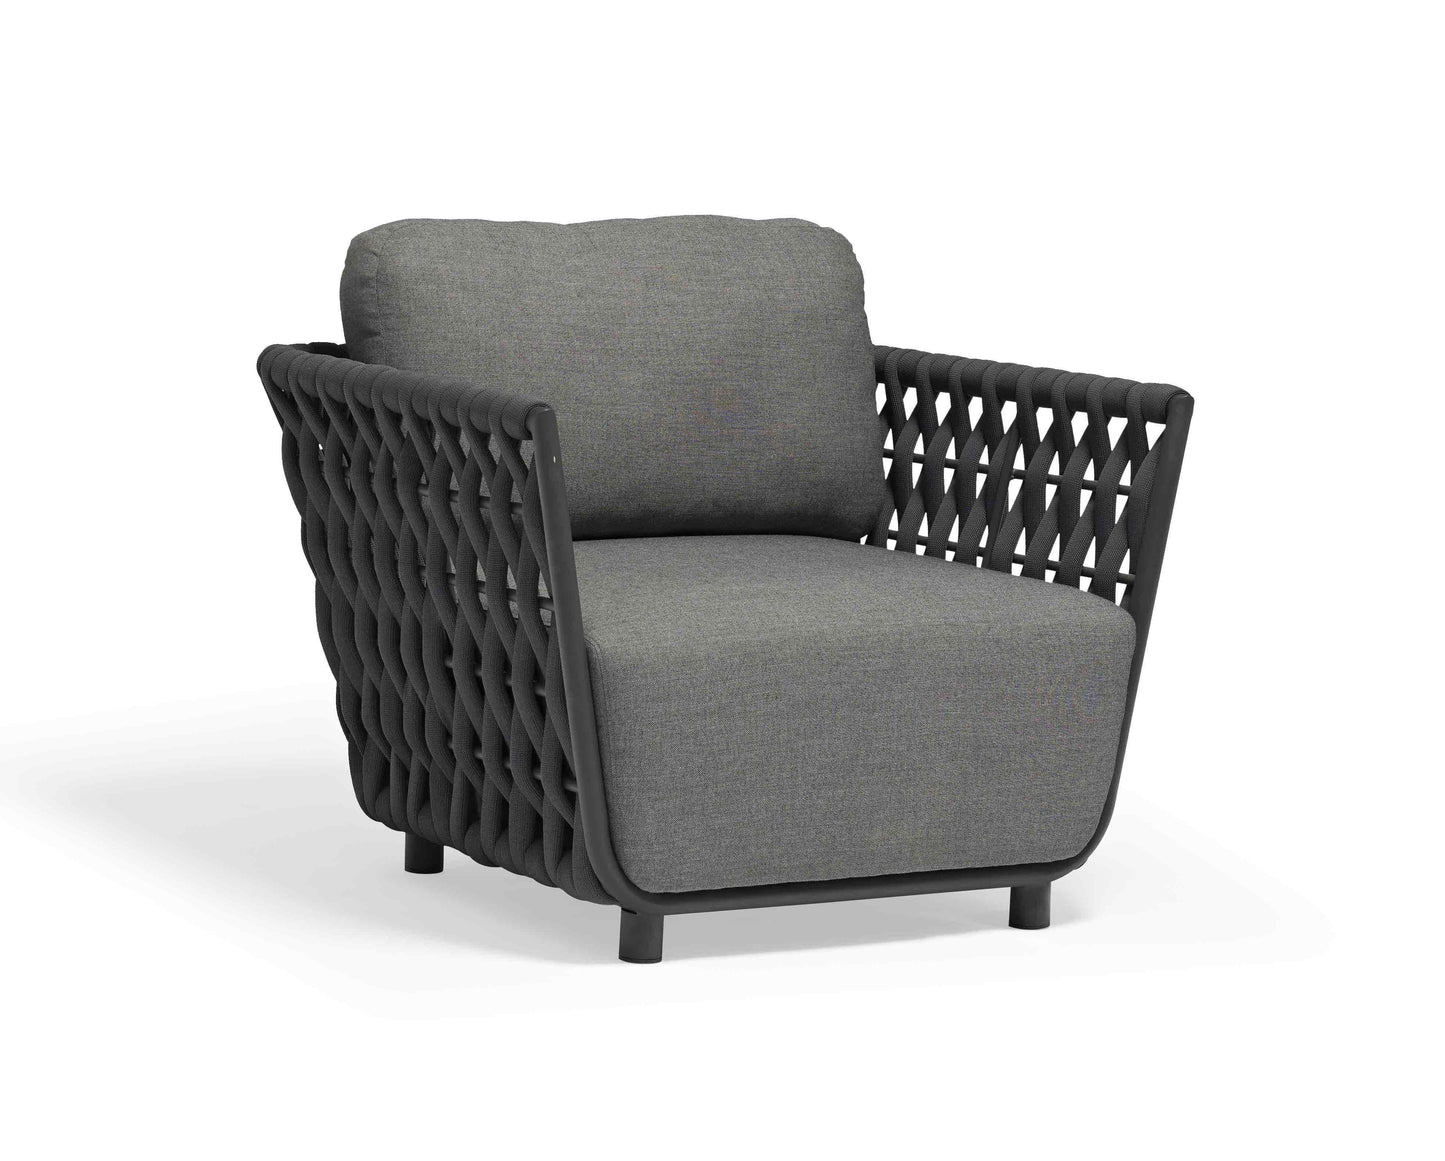 Couture Jardin | Hug | Outdoor Sofa Set - - 6 Seater Set